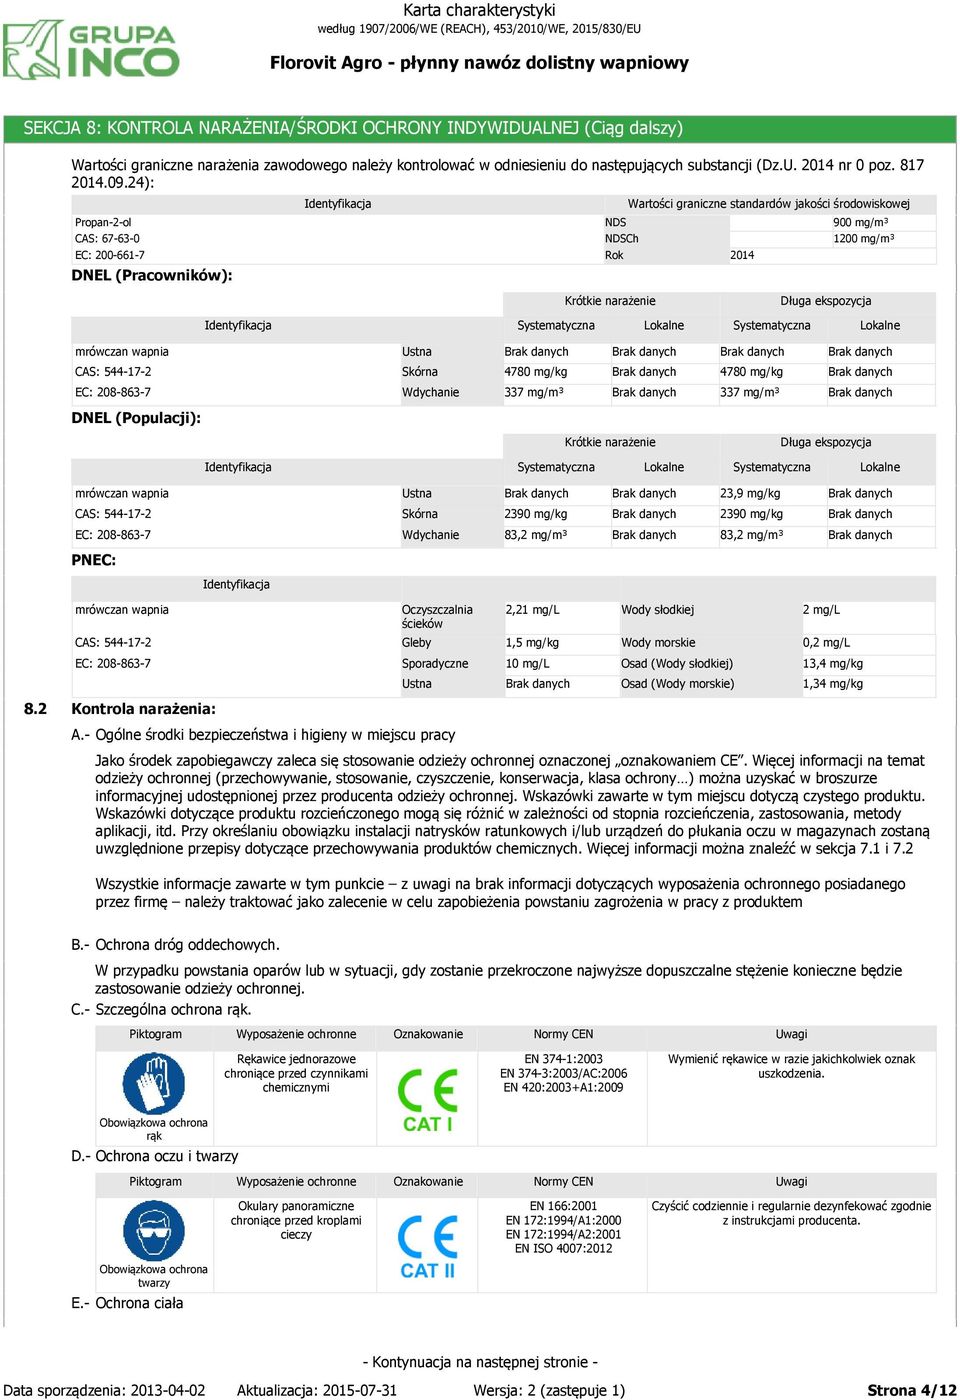 24): Propan-2-ol CAS: 67-63-0 EC: 200-661-7 DNEL (Pracowników): NDS NDSCh Rok Wartości graniczne standardów jakości środowiskowej 2014 900 mg/m³ 1200 mg/m³ Krótkie narażenie Długa ekspozycja